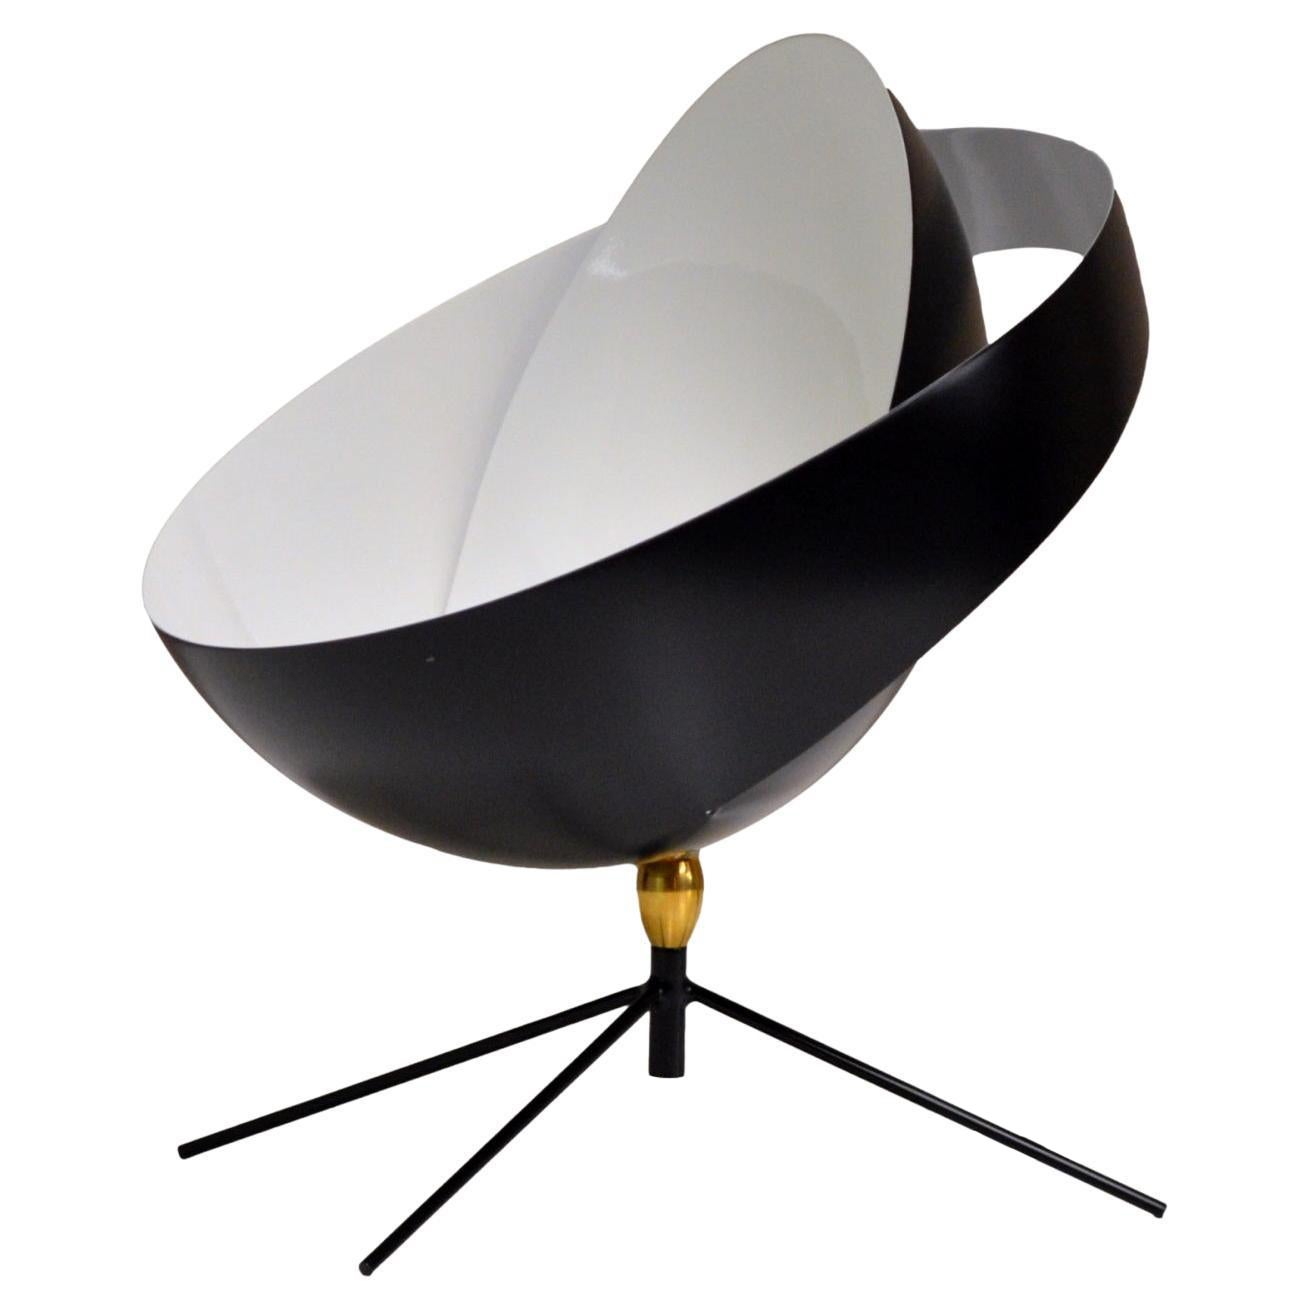 Serge Mouille - Saturn Desk Lamp